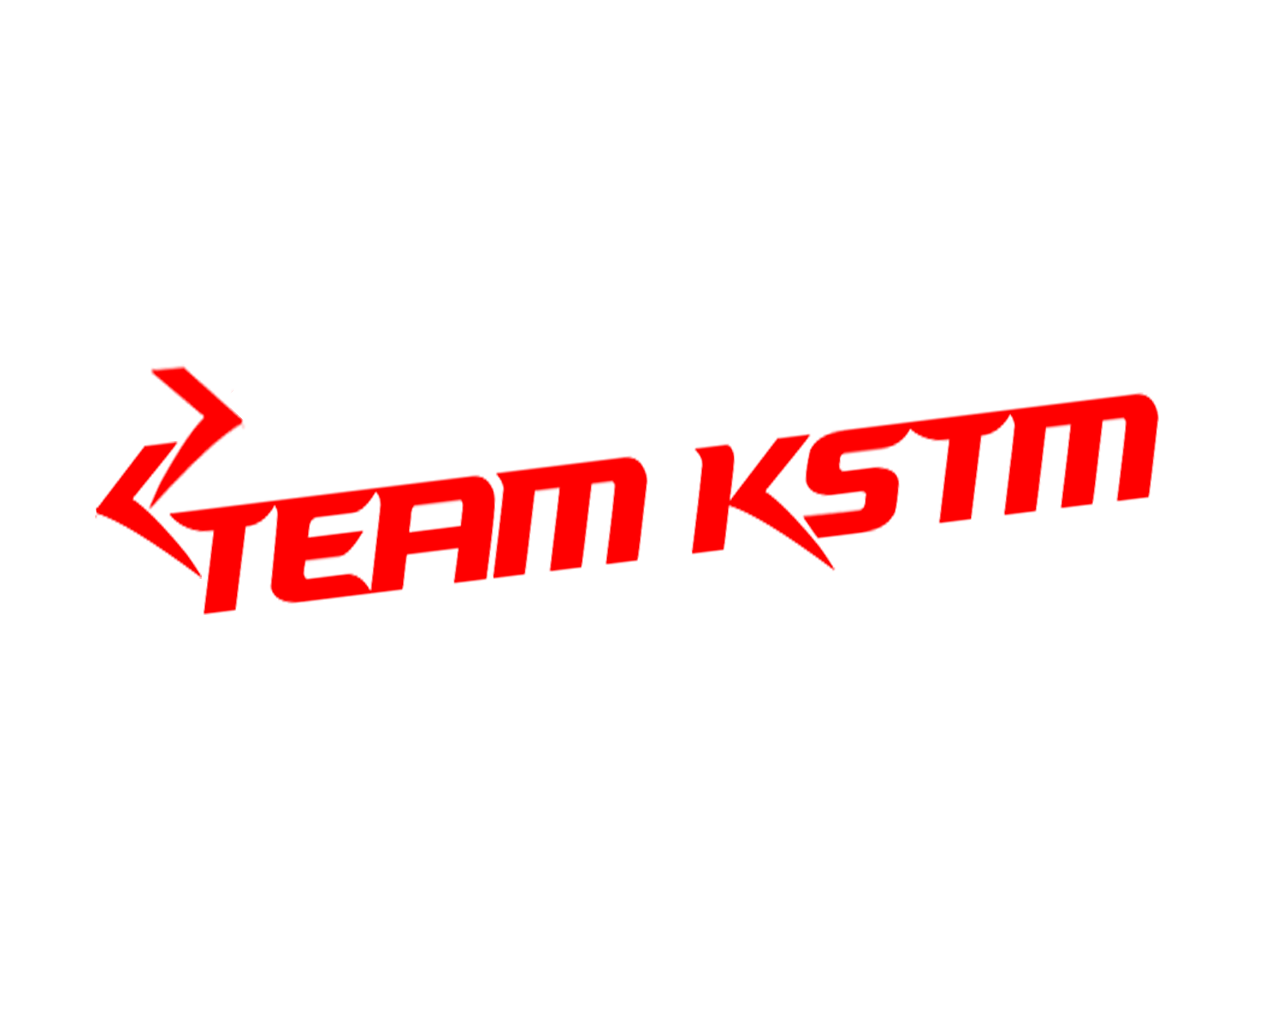 Team KSTM